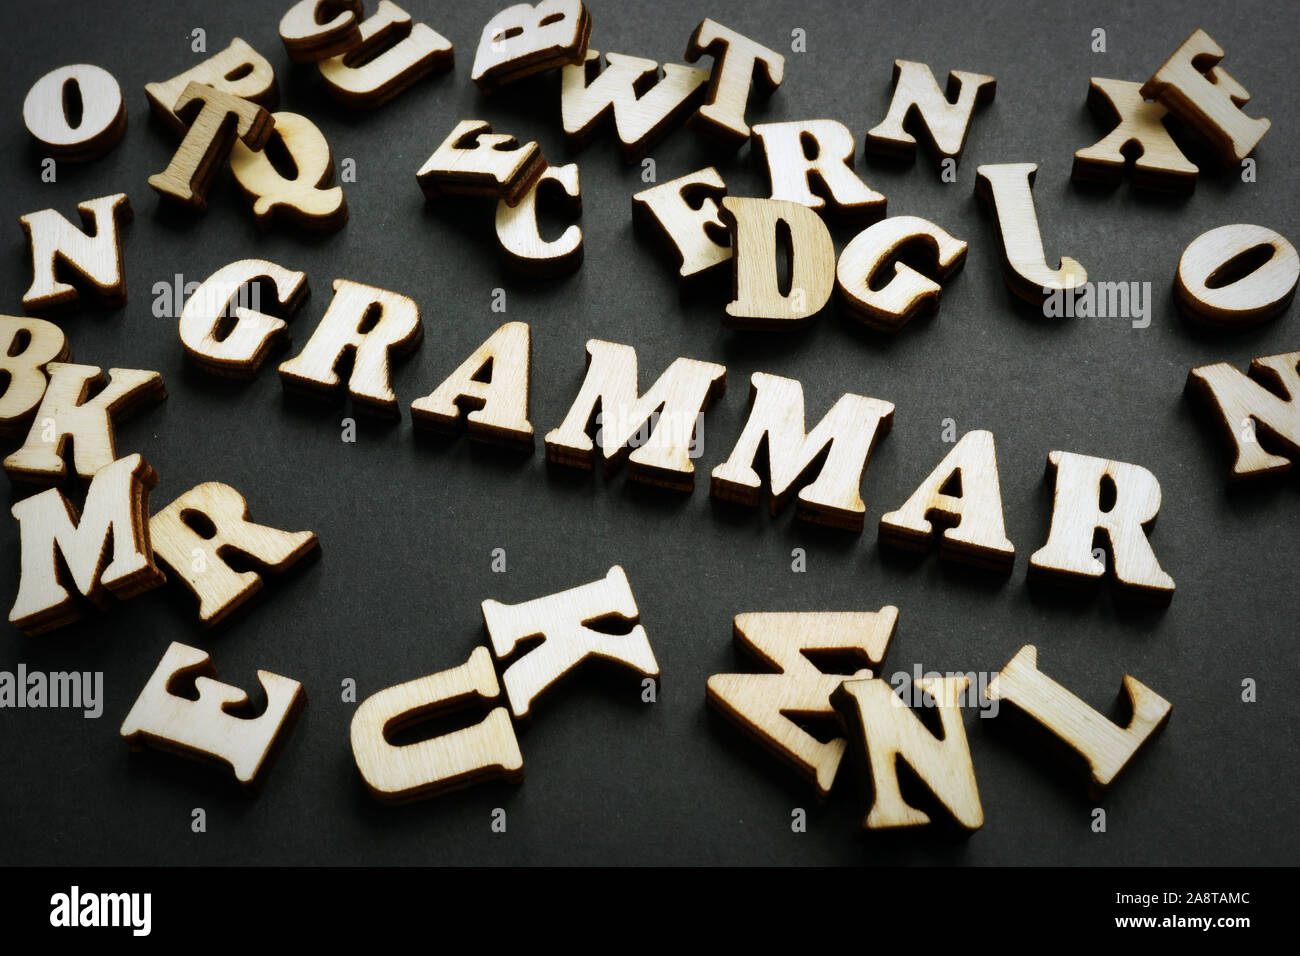 Grammatik Wort aus Holz Buchstaben. Englisch lernen - Konzept. Stockfoto